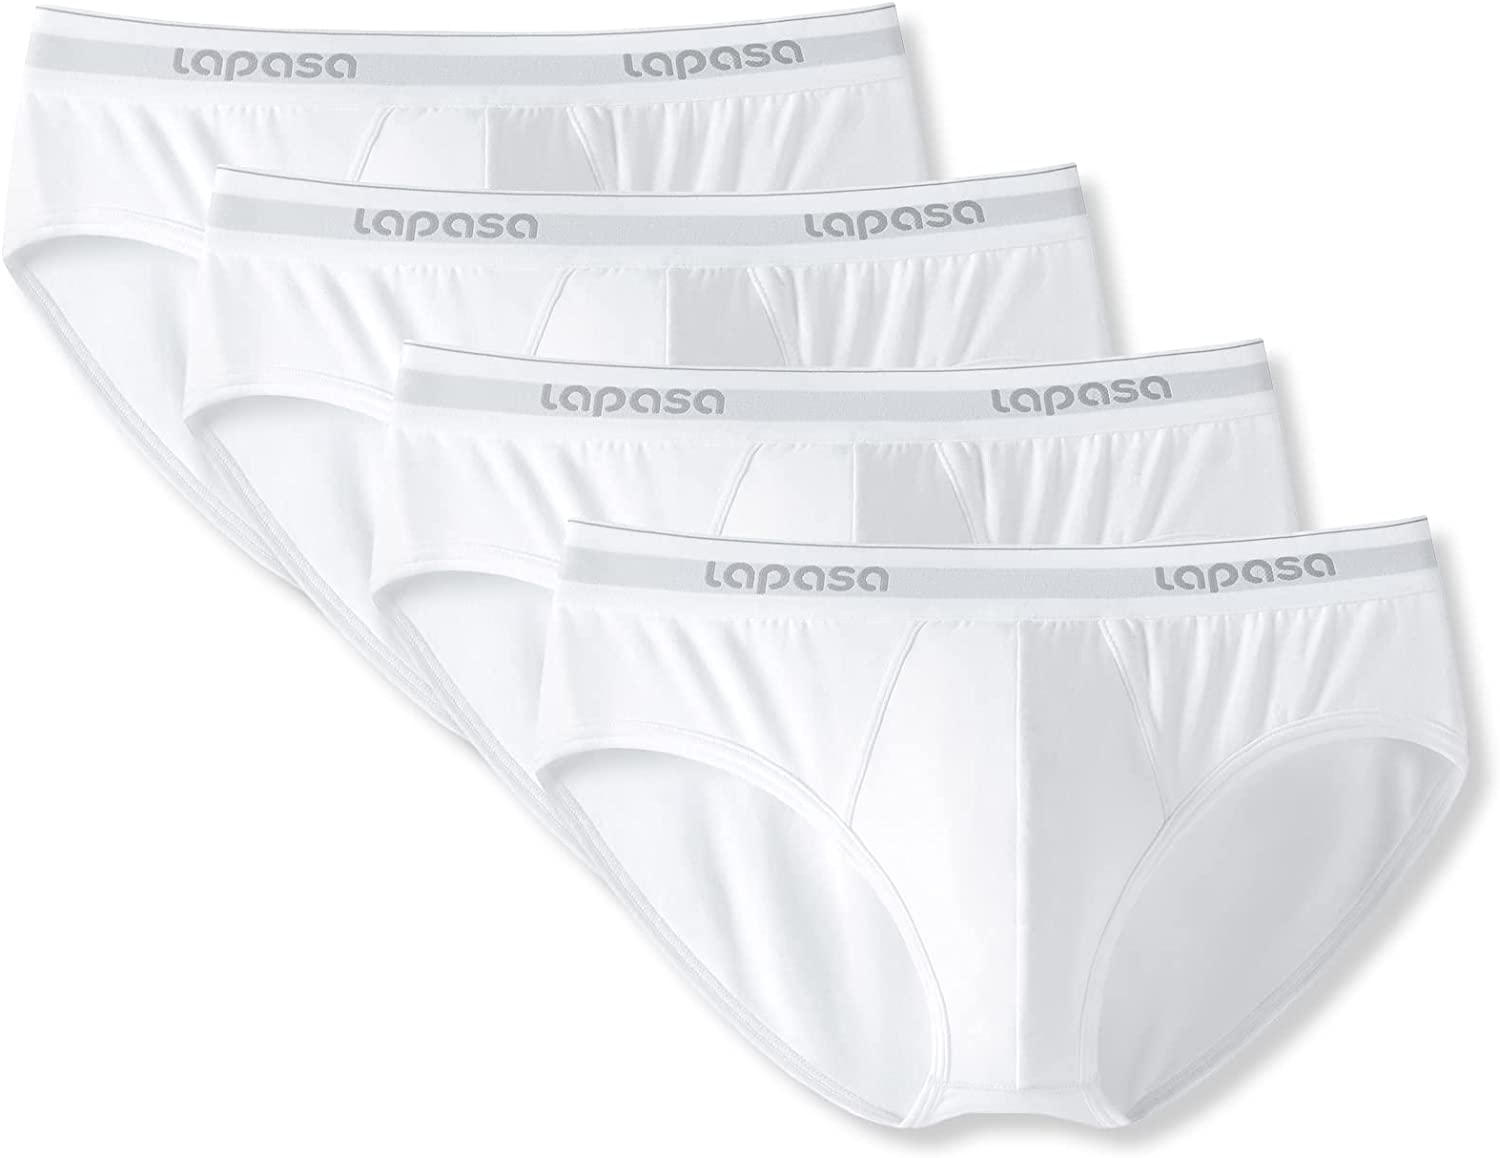 LAPASA Men's Briefs Cotton Stretch 4 Pack Bulge Pouch Underwear No Fly M04